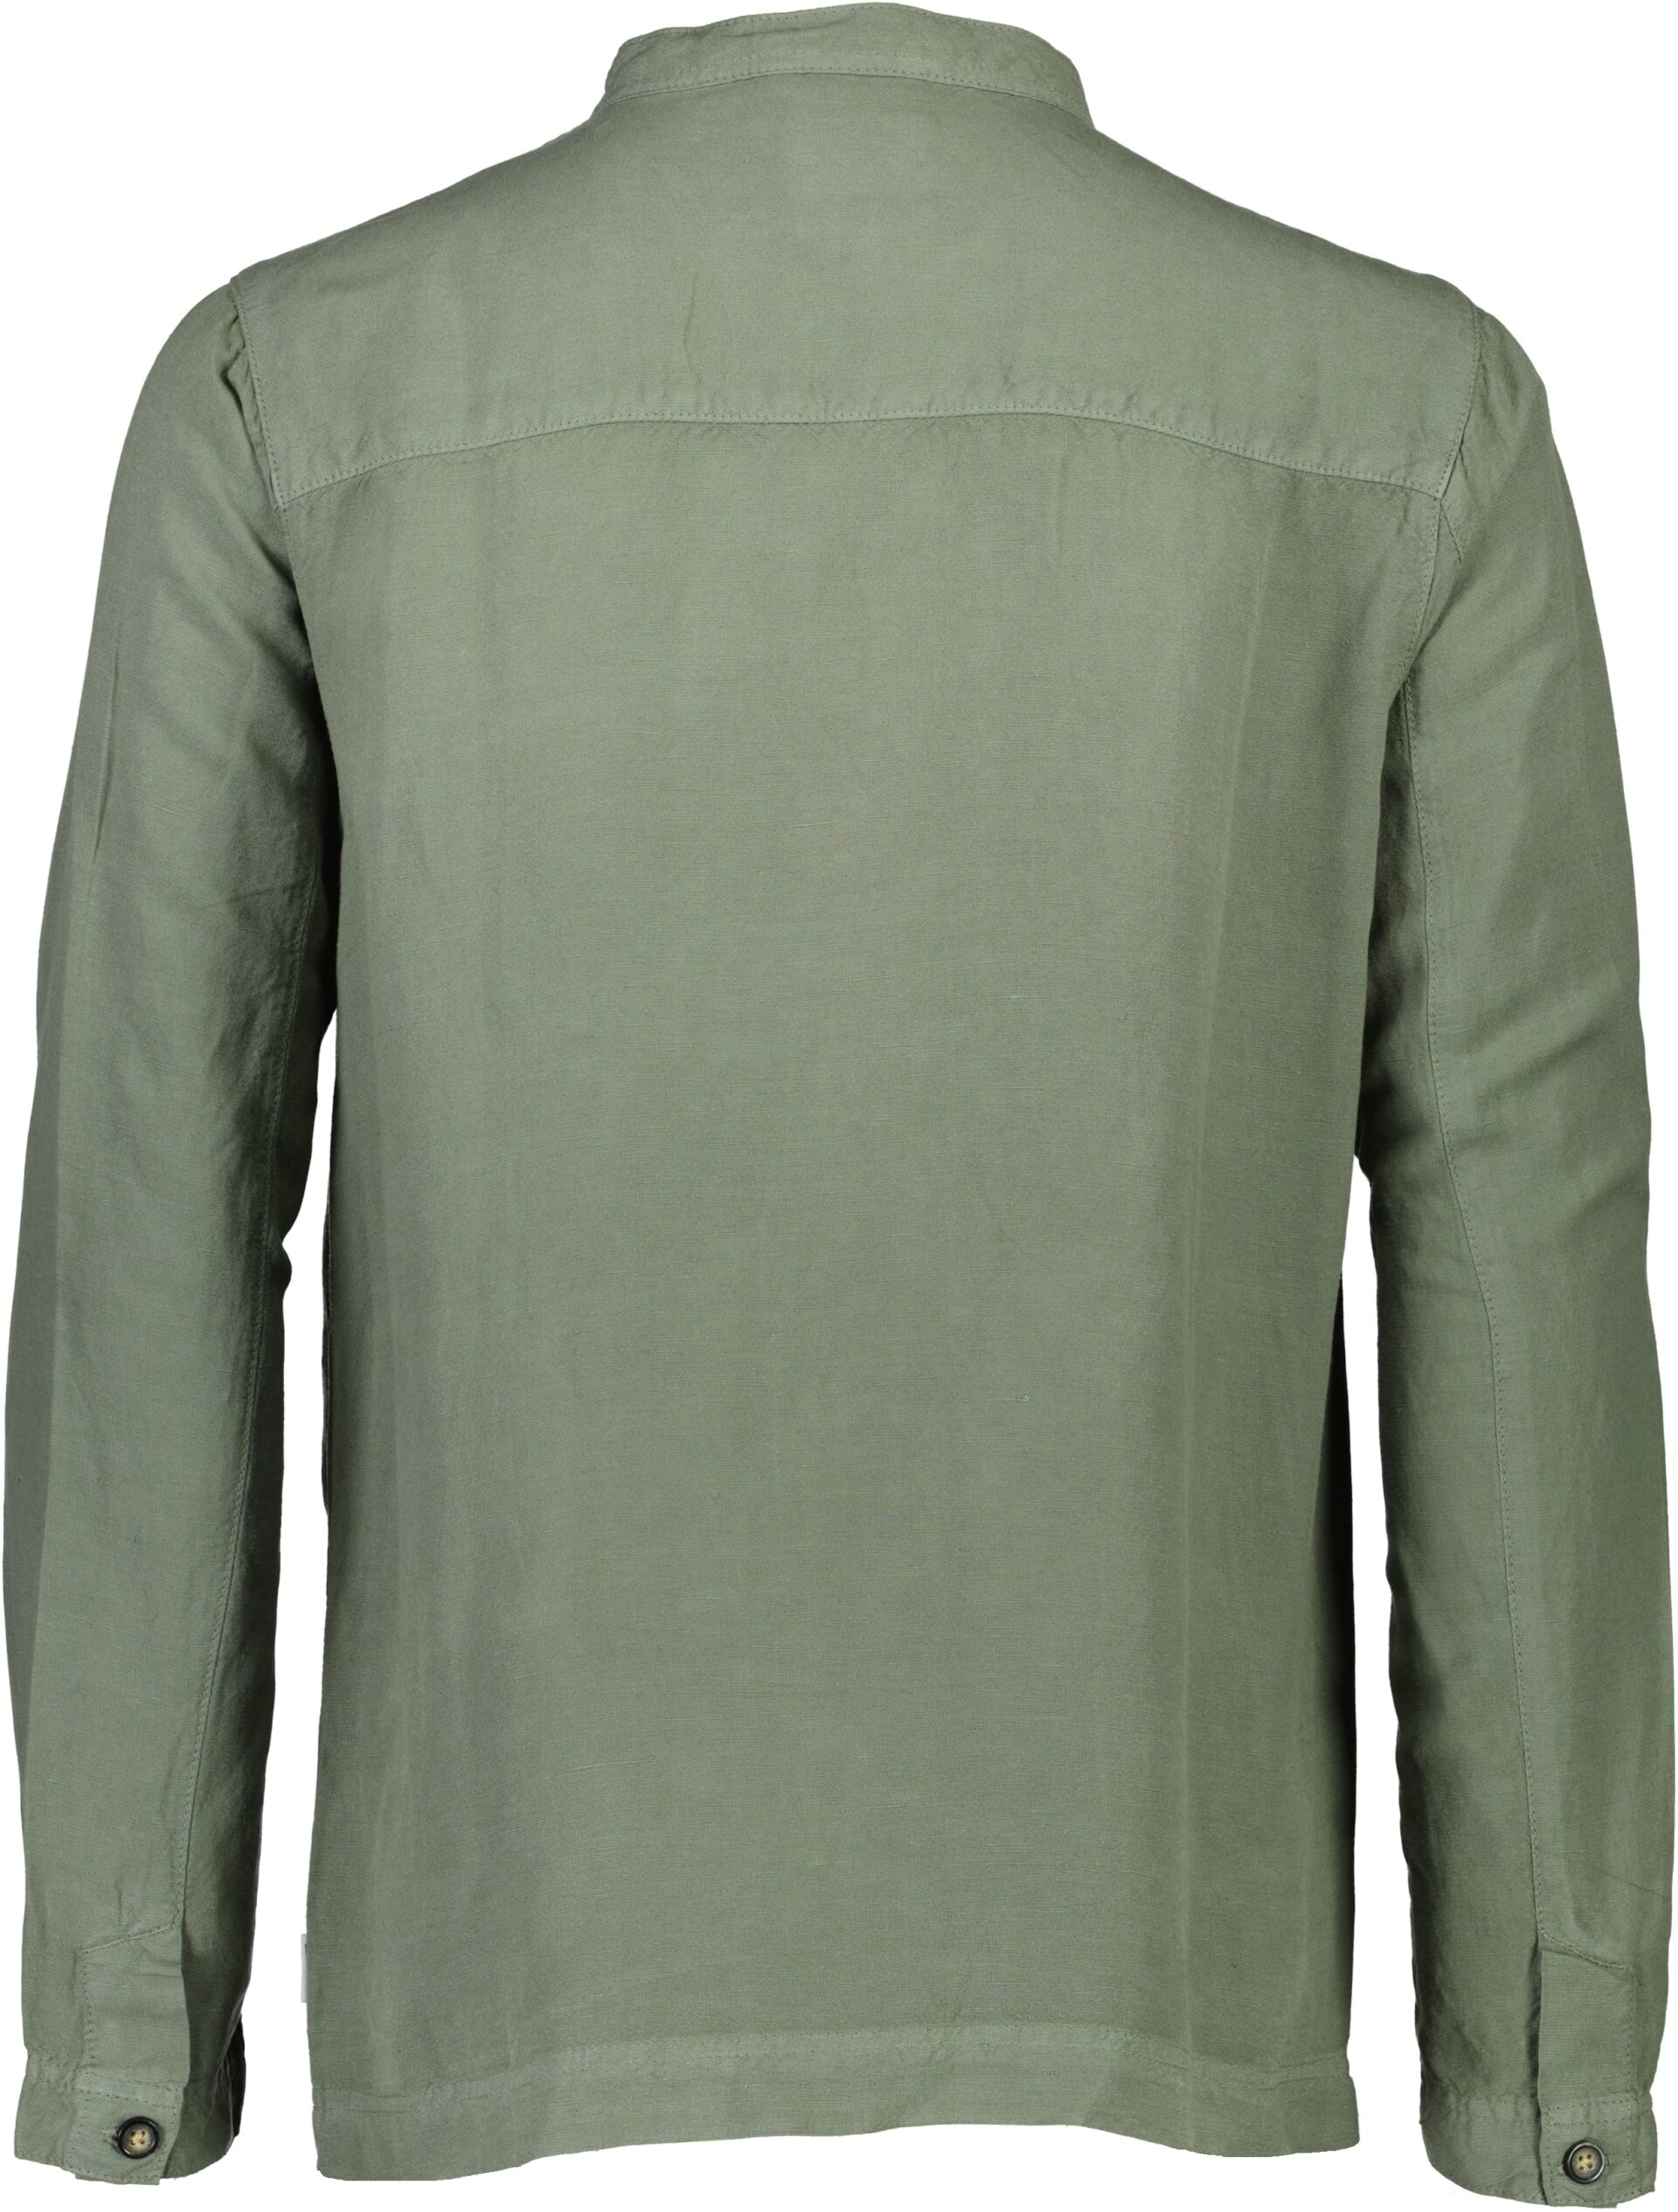 Linen shirt 30-305210